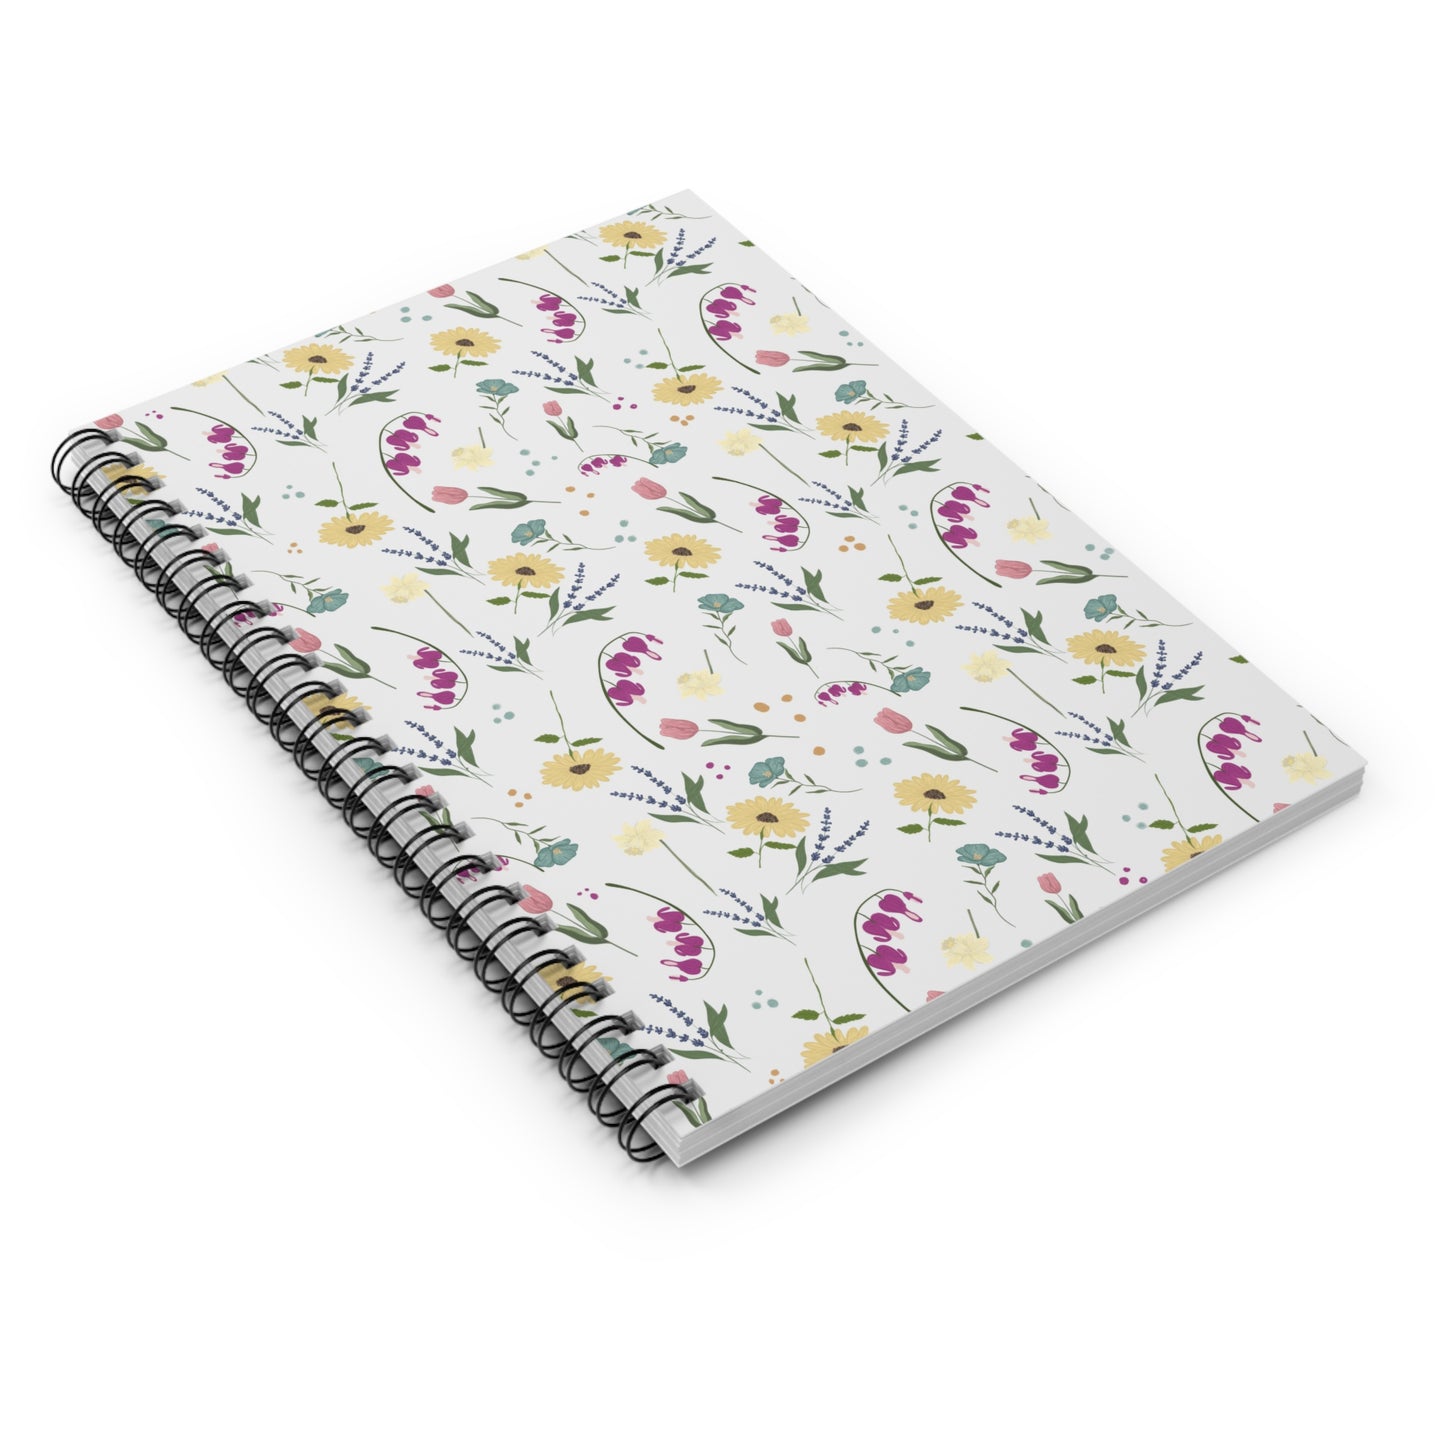 Spring Floral Spiral Notebook - Ruled Line